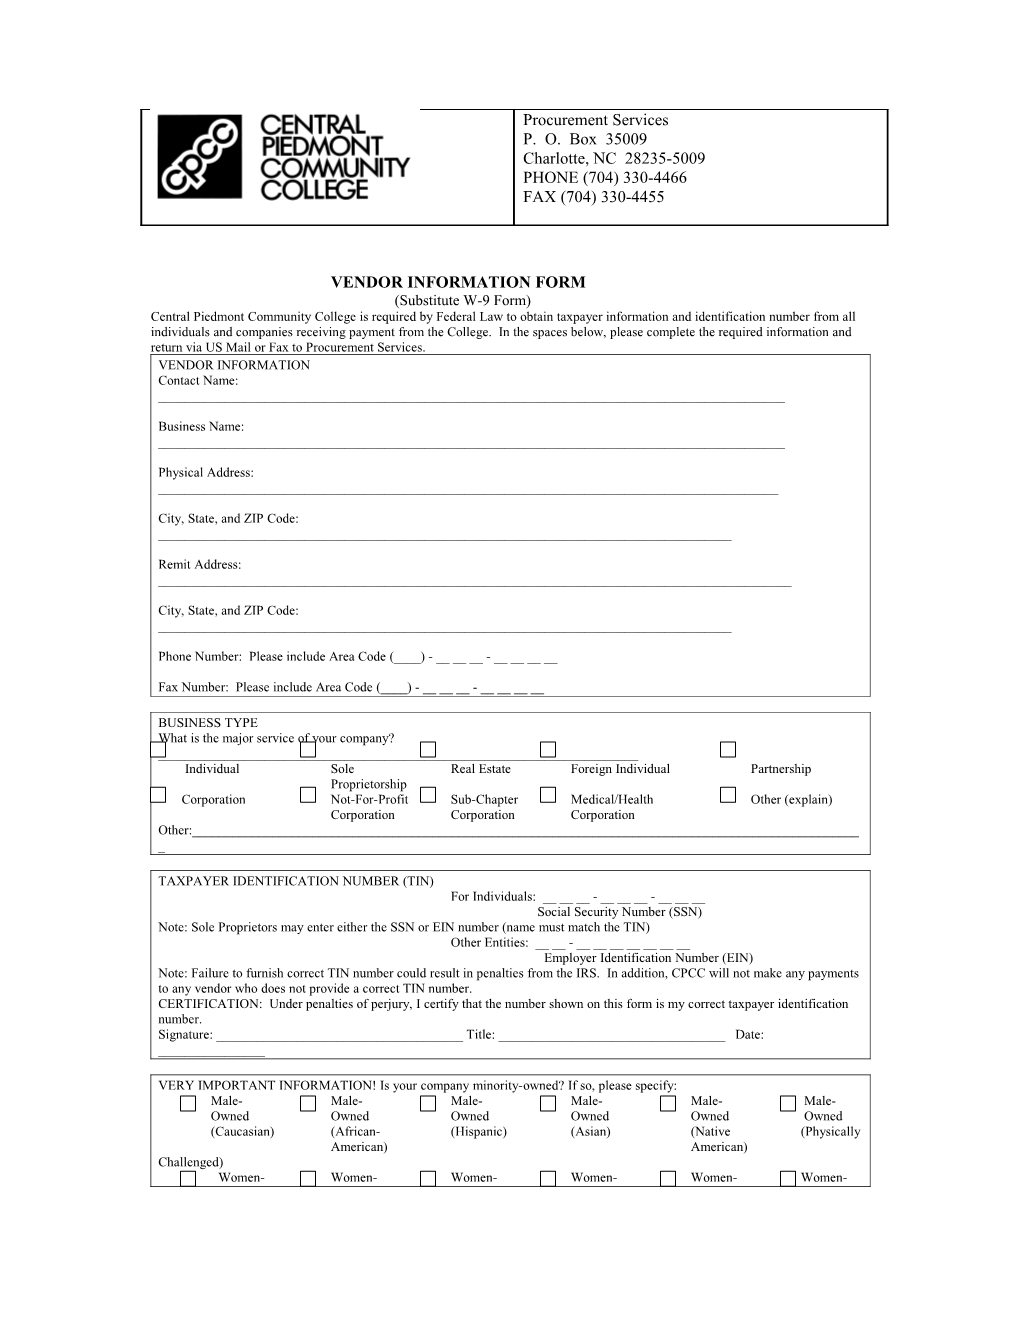 Vendor Information Form s1